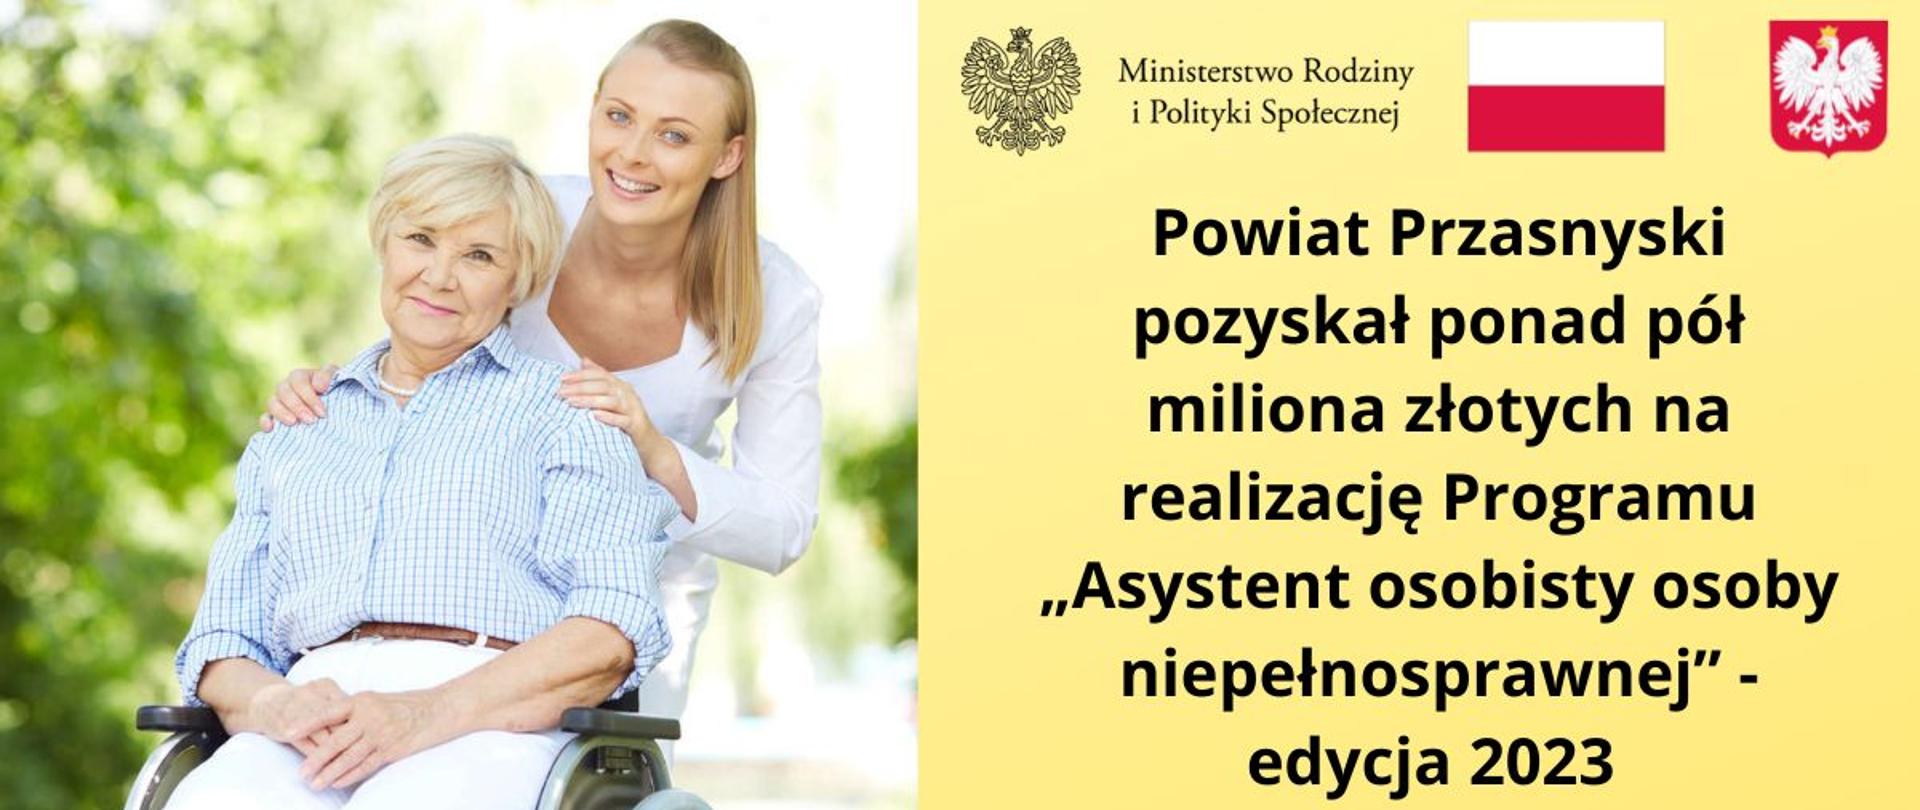 Powiat Przasnyski pozyskał ponad pół miliona złotych na realizację Programu „Asystent osobisty osoby niepełnosprawnej” - edycja 2023